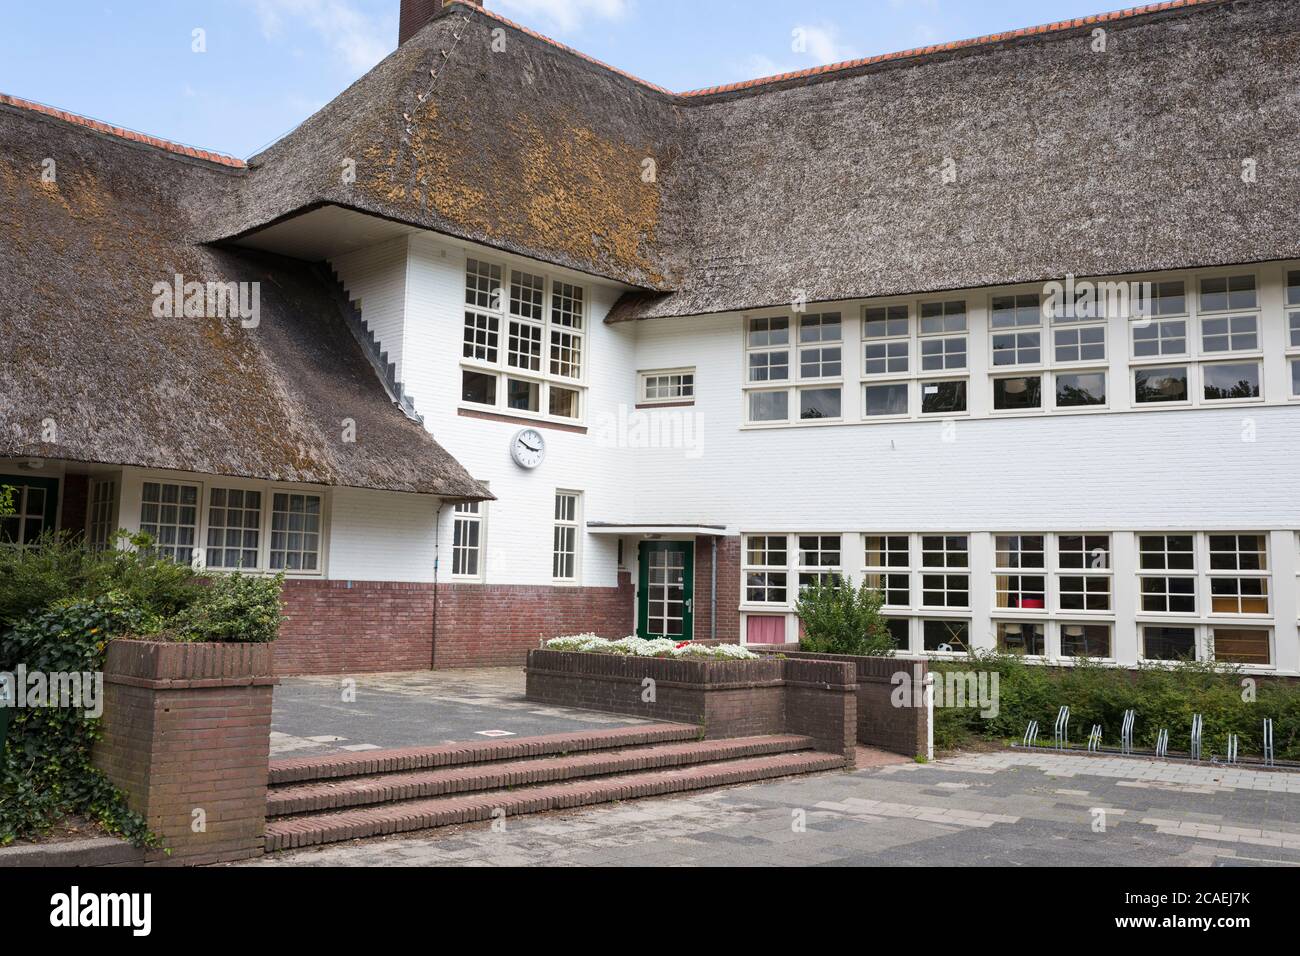 École de Fabritius avec toiture en paille construite en 1925 par l'architecte Dudok, Hilversum pays-Bas Banque D'Images